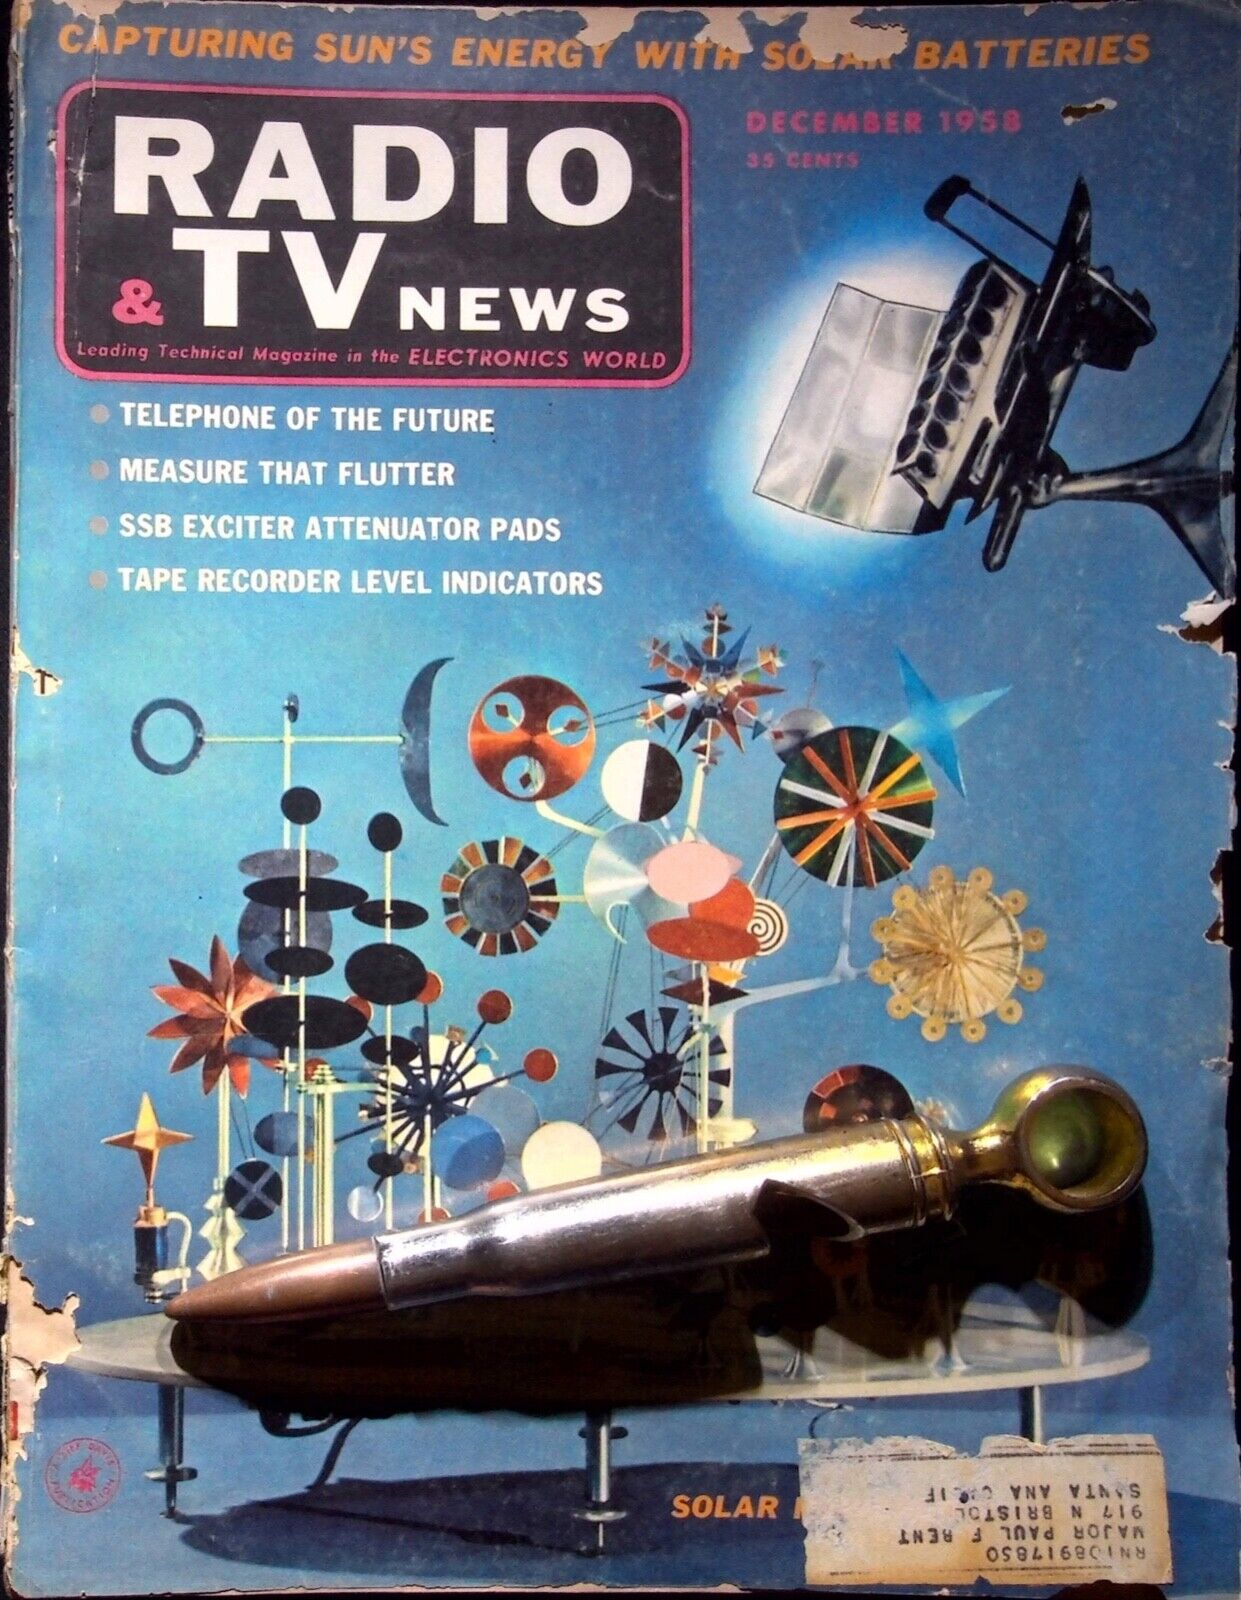 SOLAR - RADIO & TV NEWS MAGAZINE - DECEMBER 1958 DECEMBER, 1958 VOL. 60  NO. 6